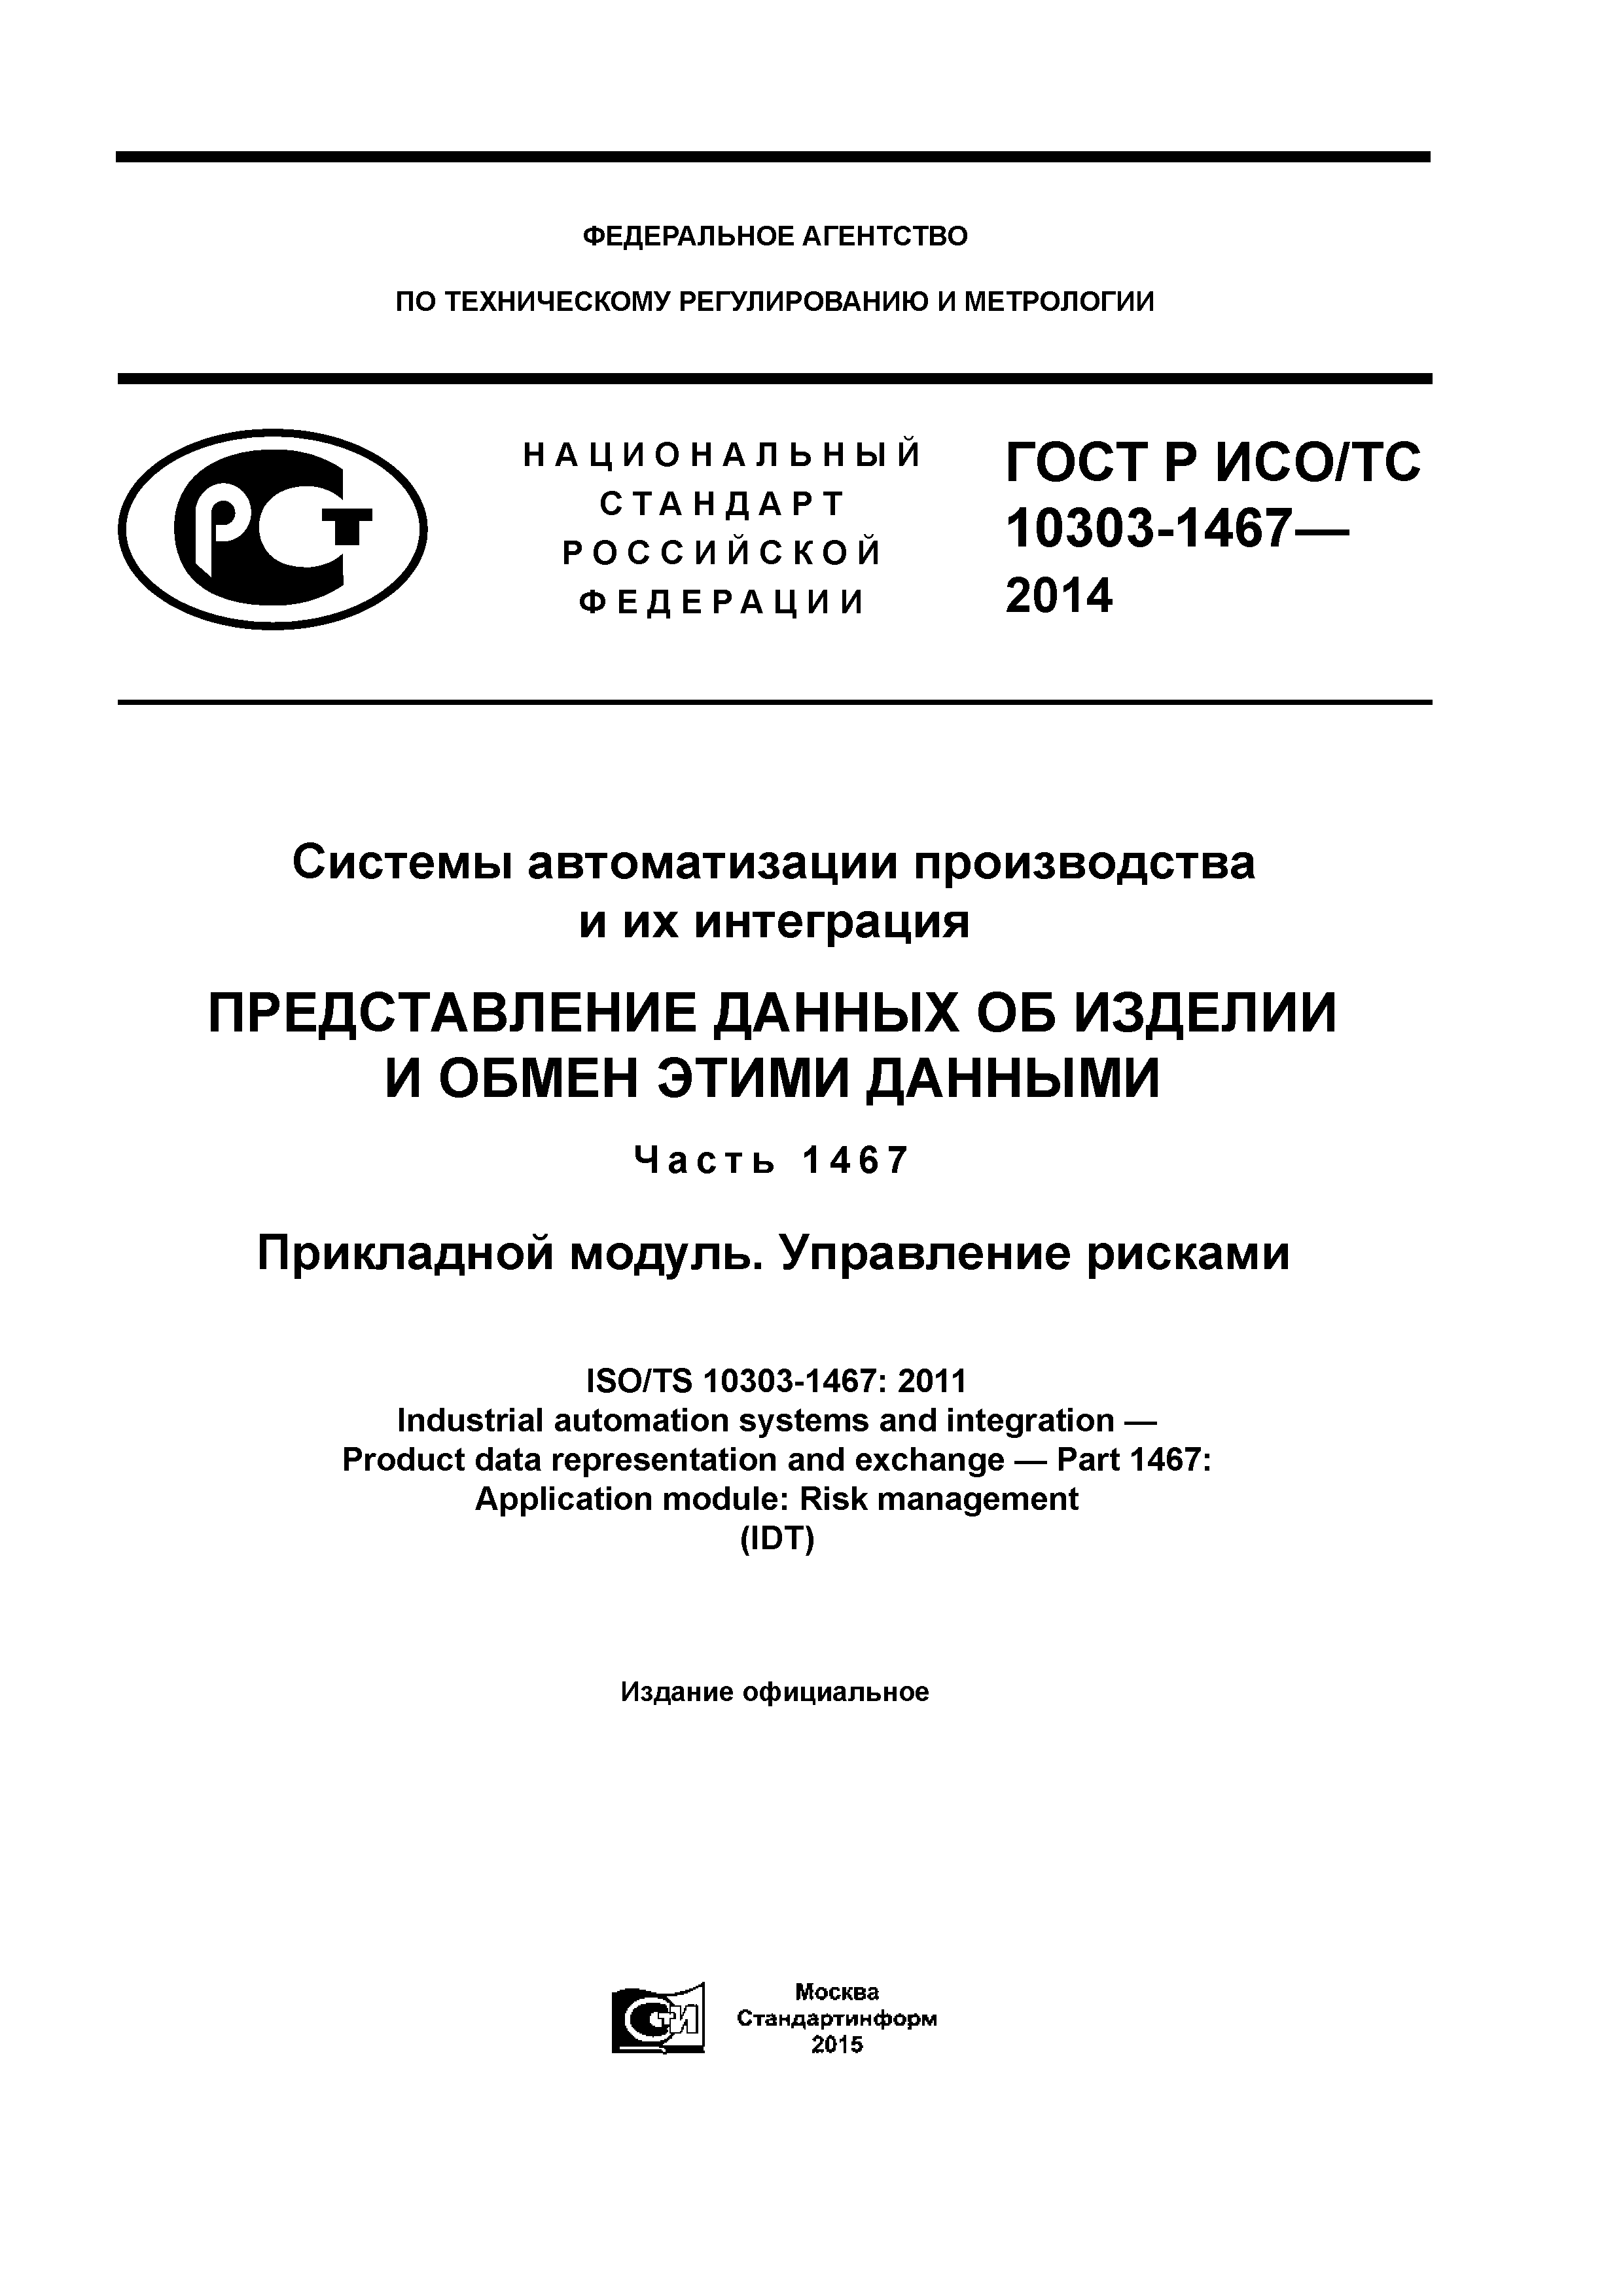 ГОСТ Р ИСО/ТС 10303-1467-2014